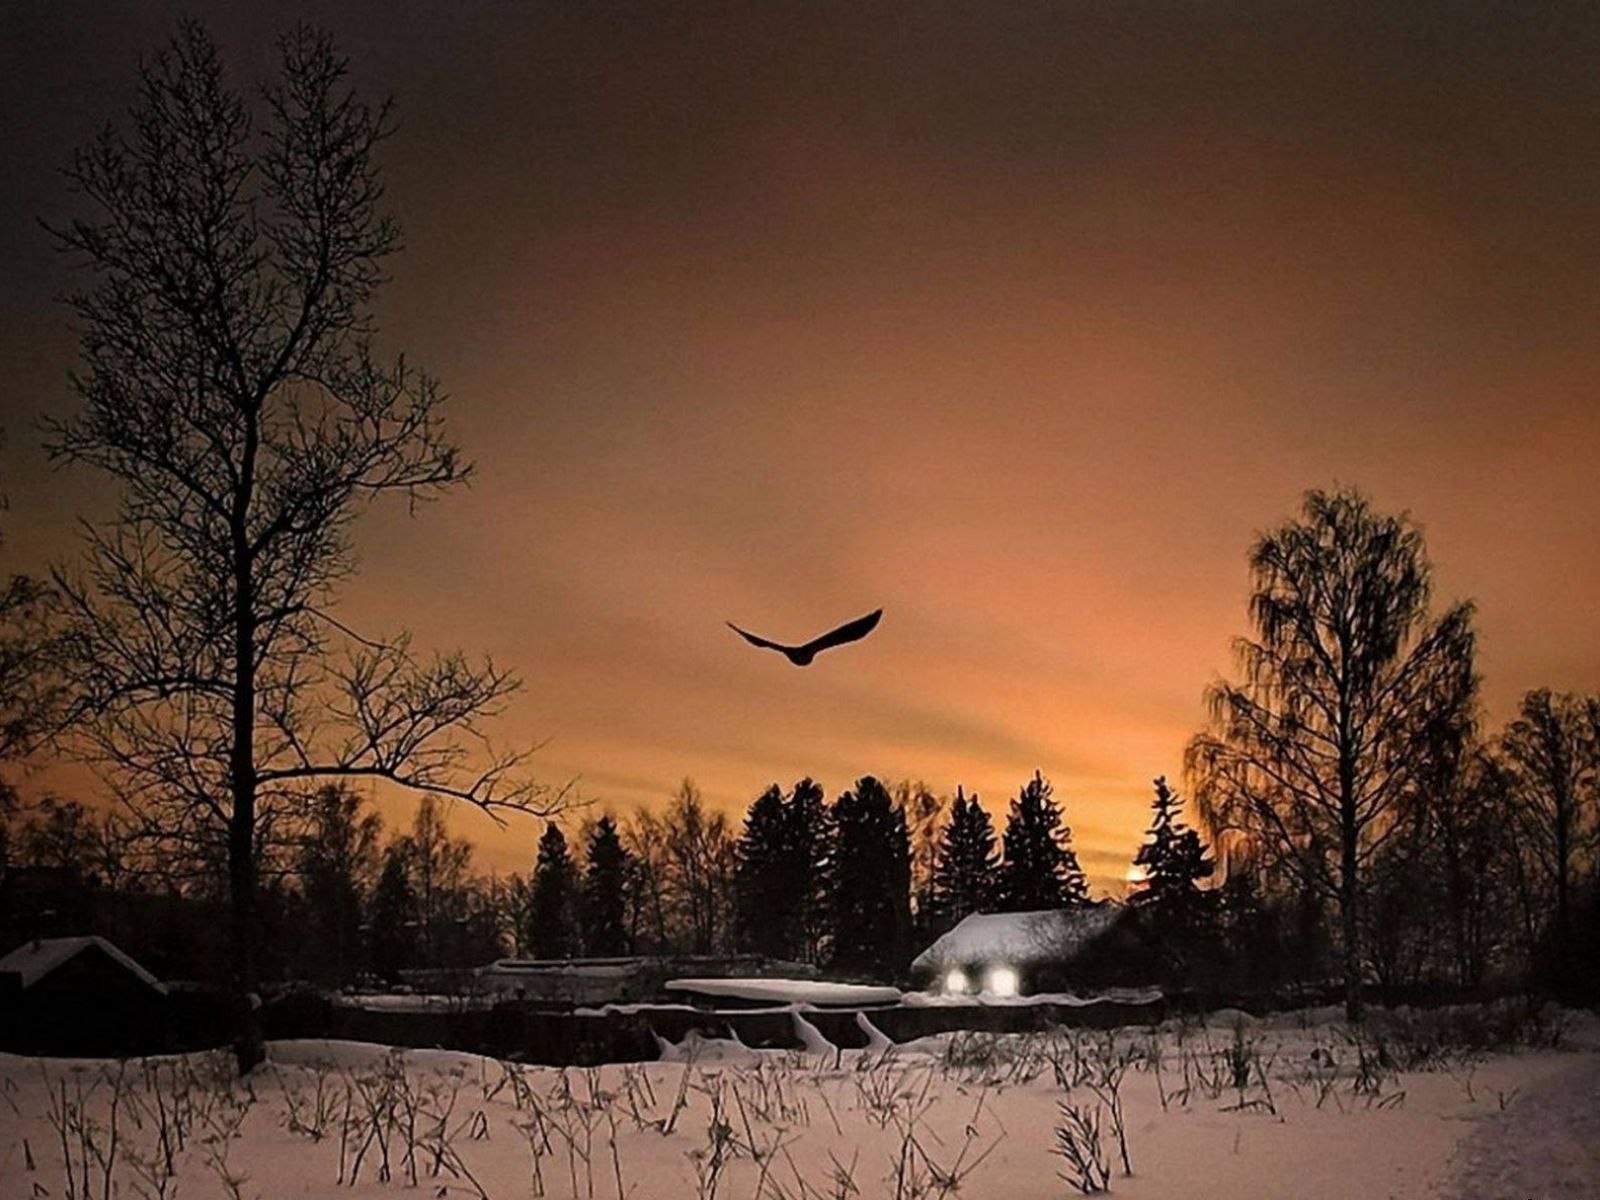 Ю в поздним вечером. Птицы над лесом. Птицы в небе зимой. Зимний вечер. Птицы над деревней.